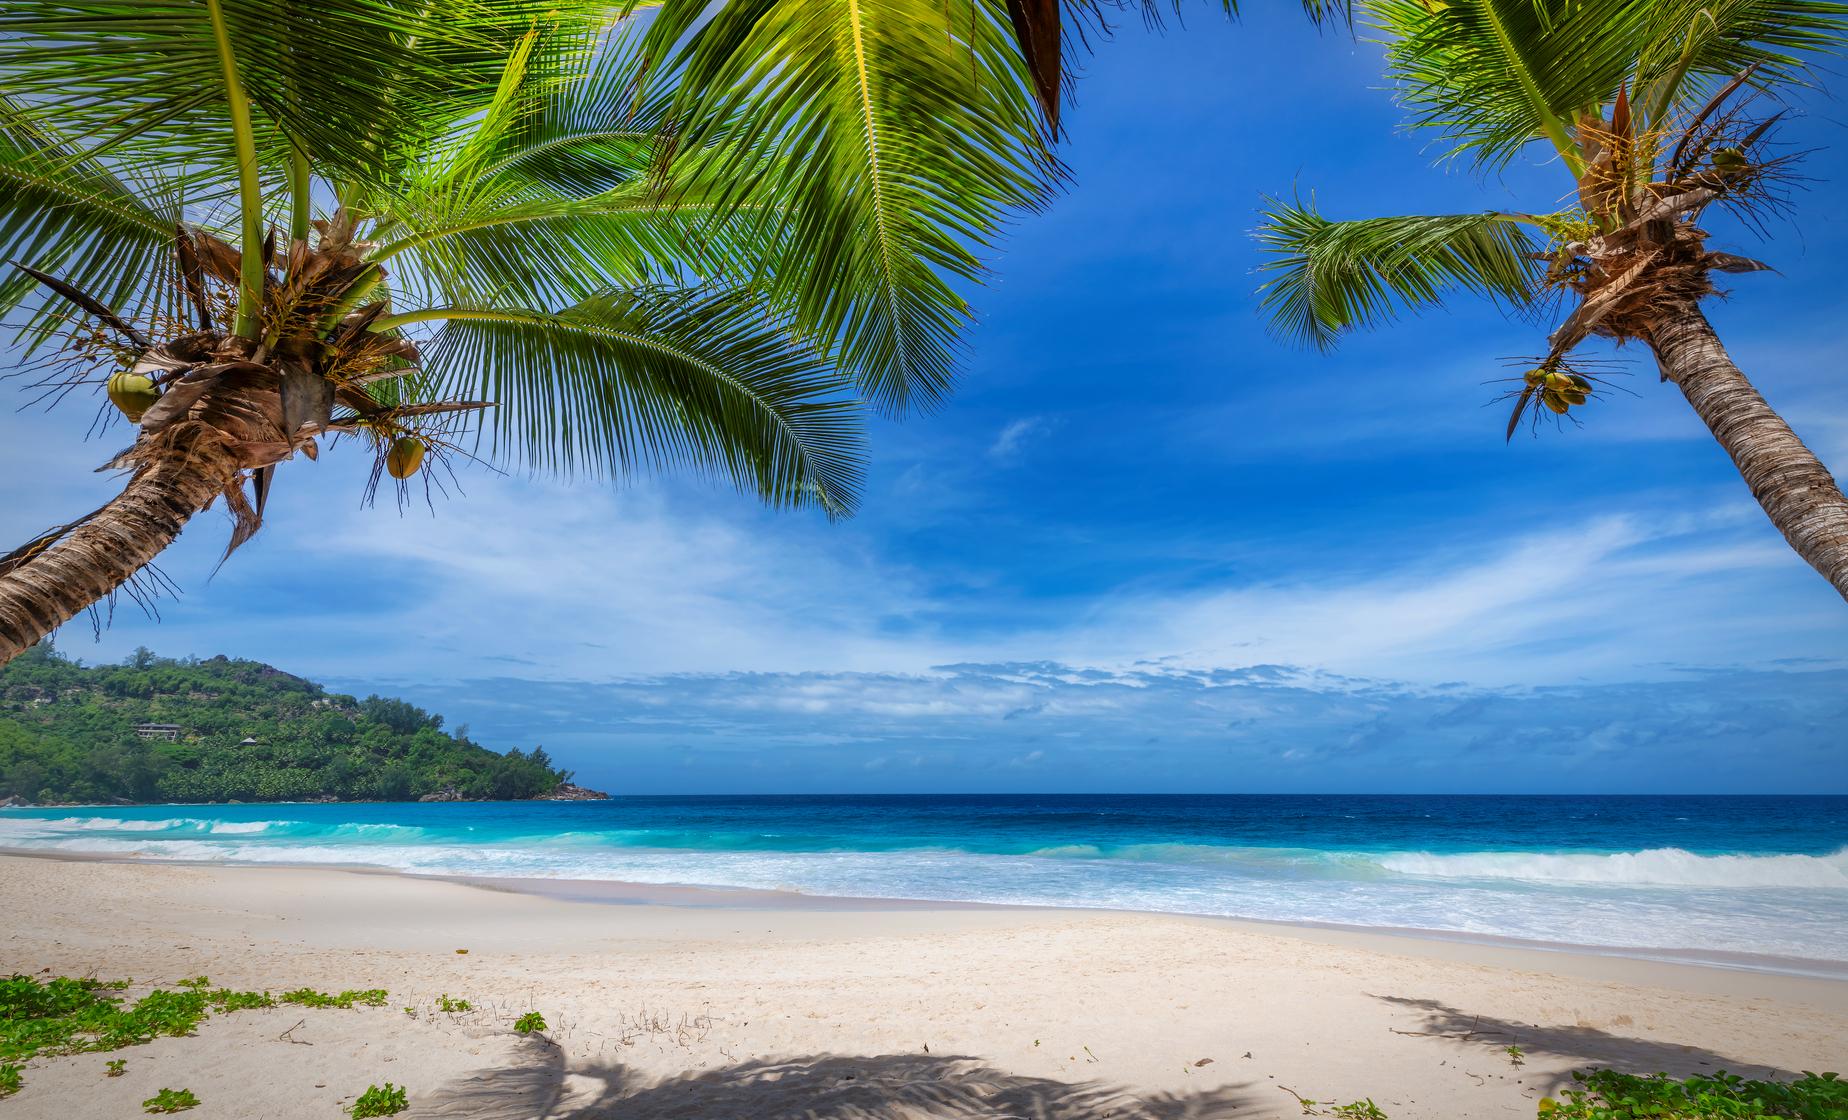 beaches in costa maya near cruise port